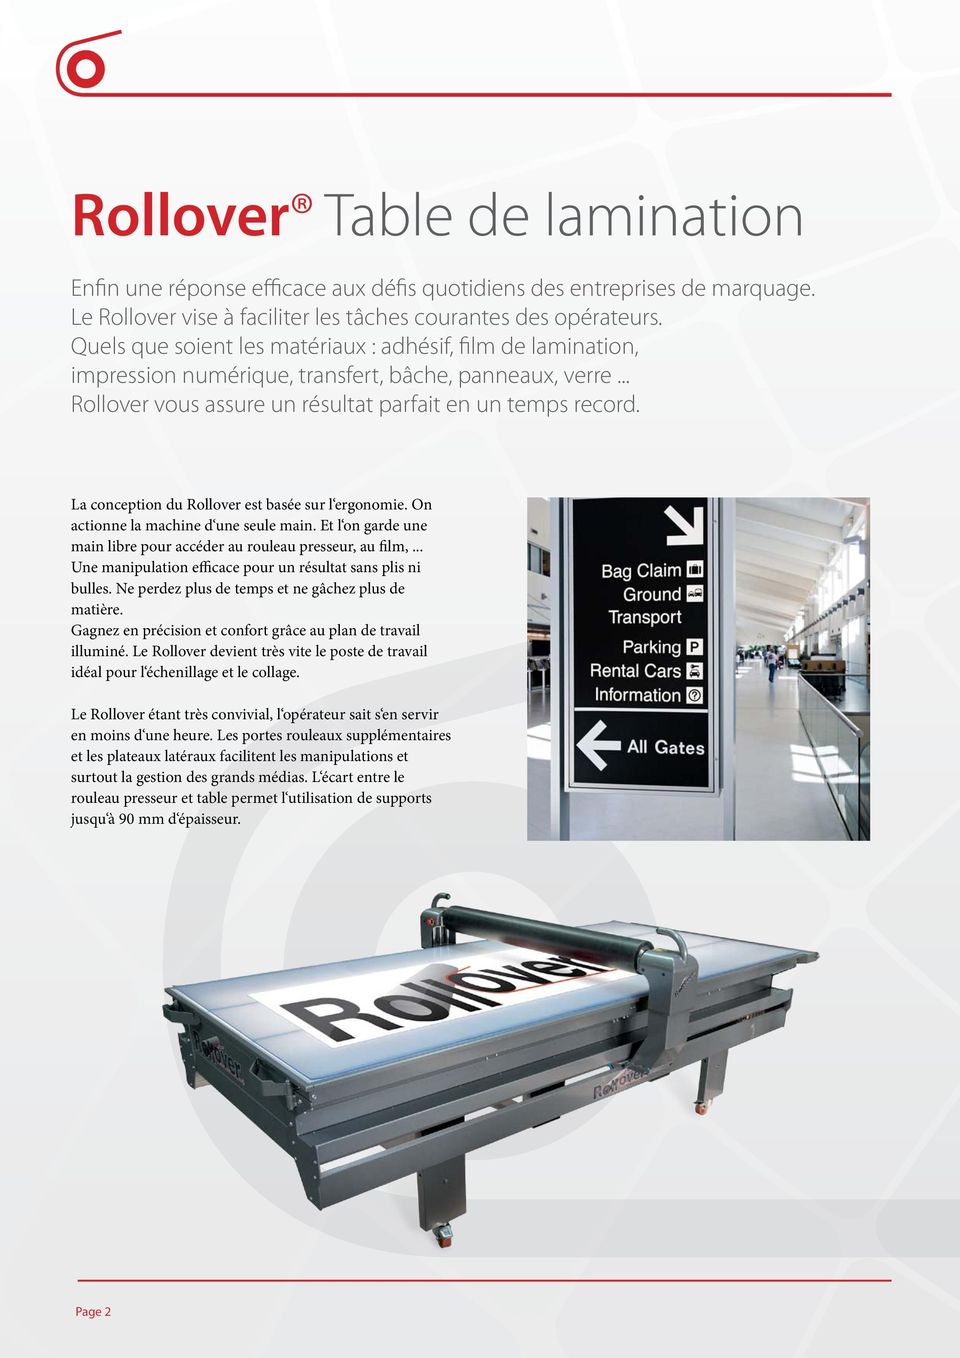 La conception du Rollover est basée sur l ergonomie. On actionne la machine d une seule main. Et l on garde une main libre pour accéder au rouleau presseur, au film,.